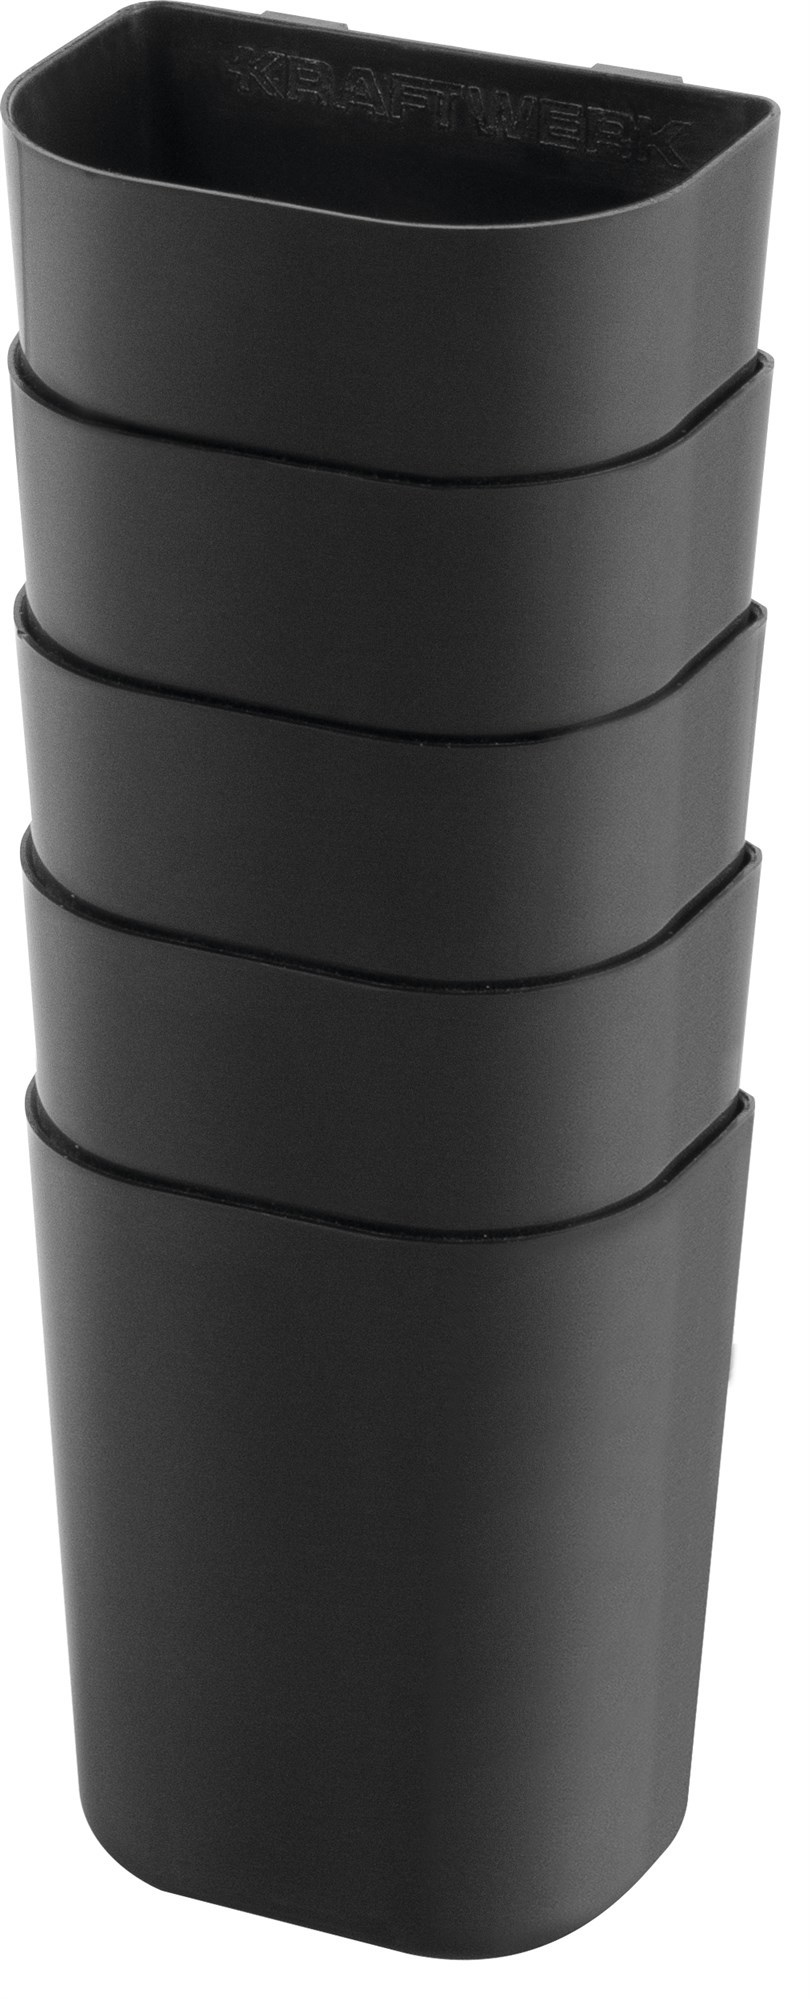 Universalbehälter für Lochwand, 90x75x50 mm, 5Stk.